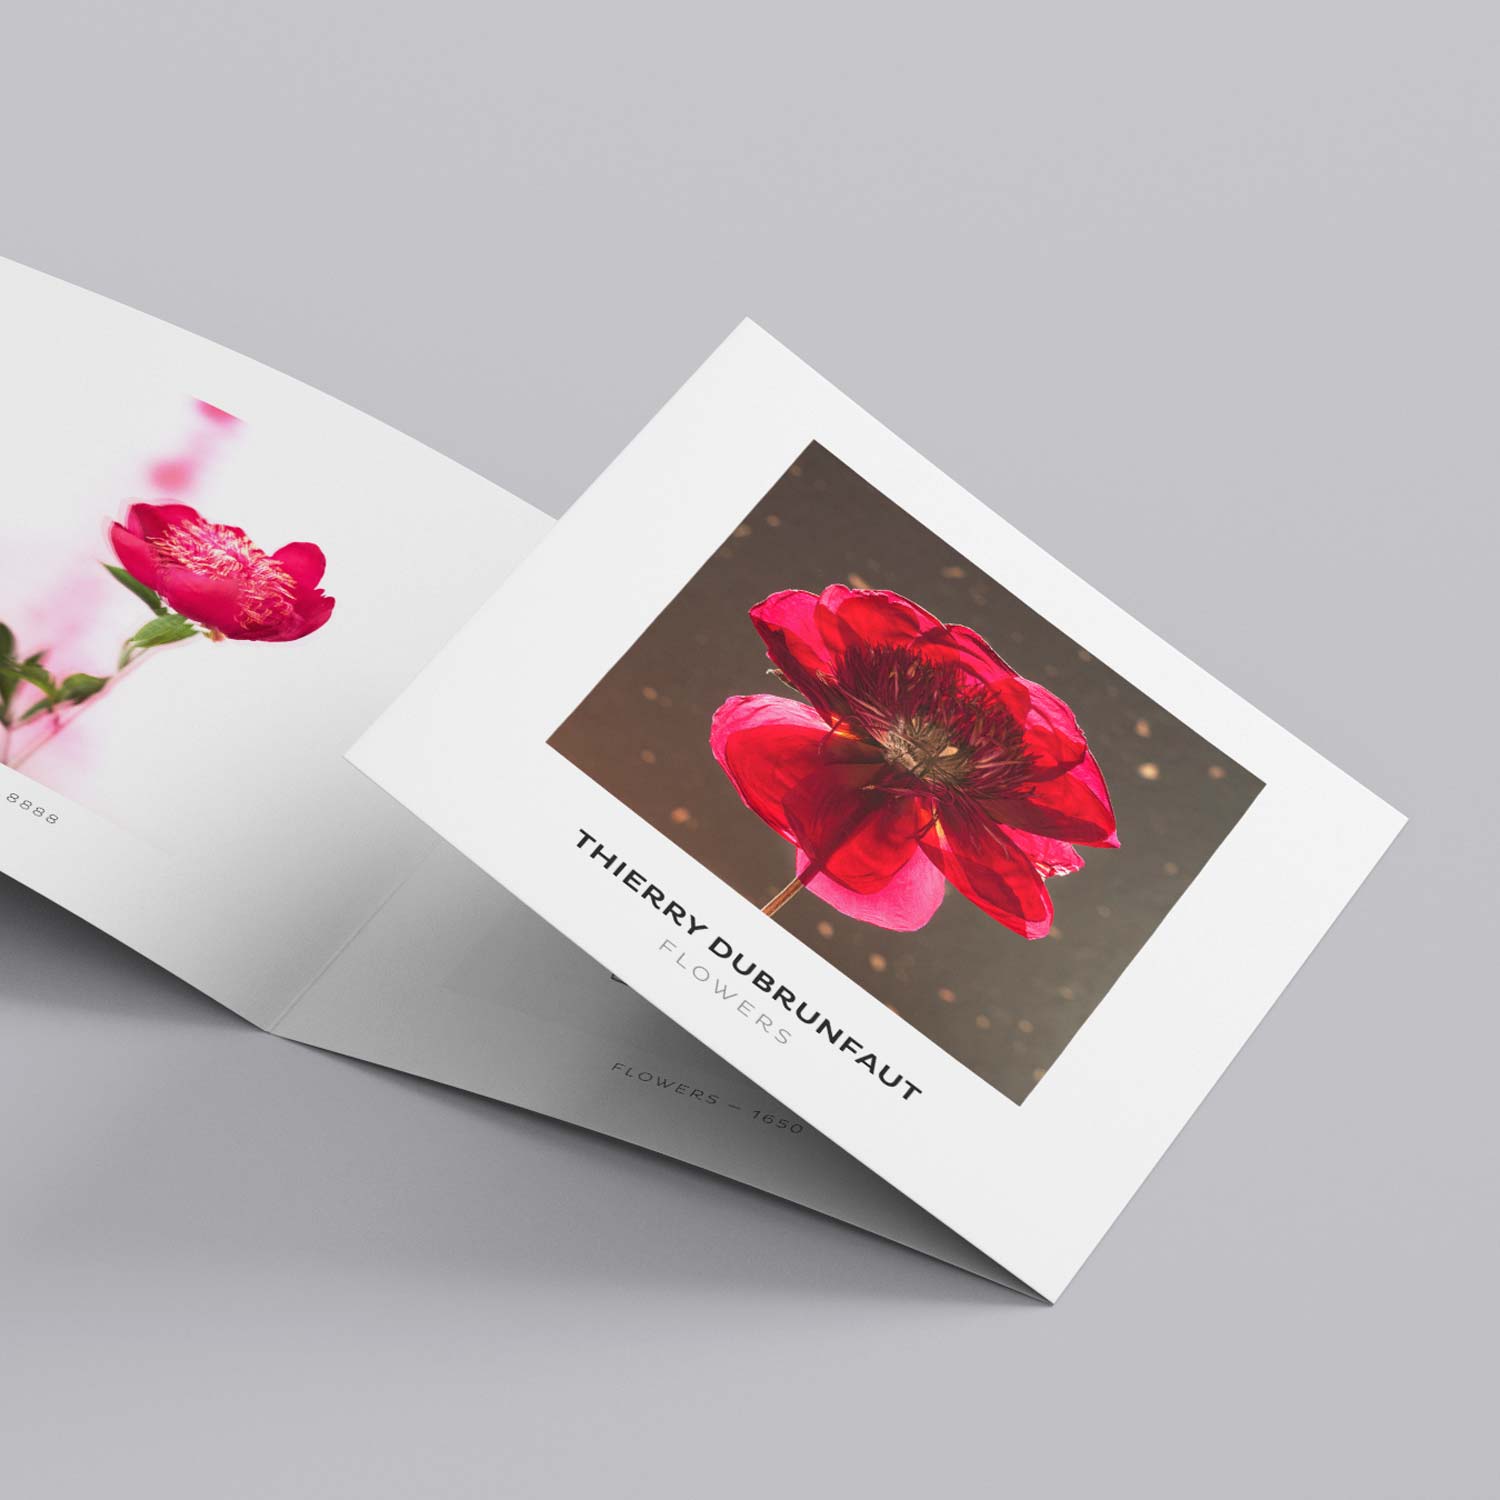 Labelpages | Portfolio | Thierry Dubrunfaut – Exposition "FLOWERS" | Dépliant